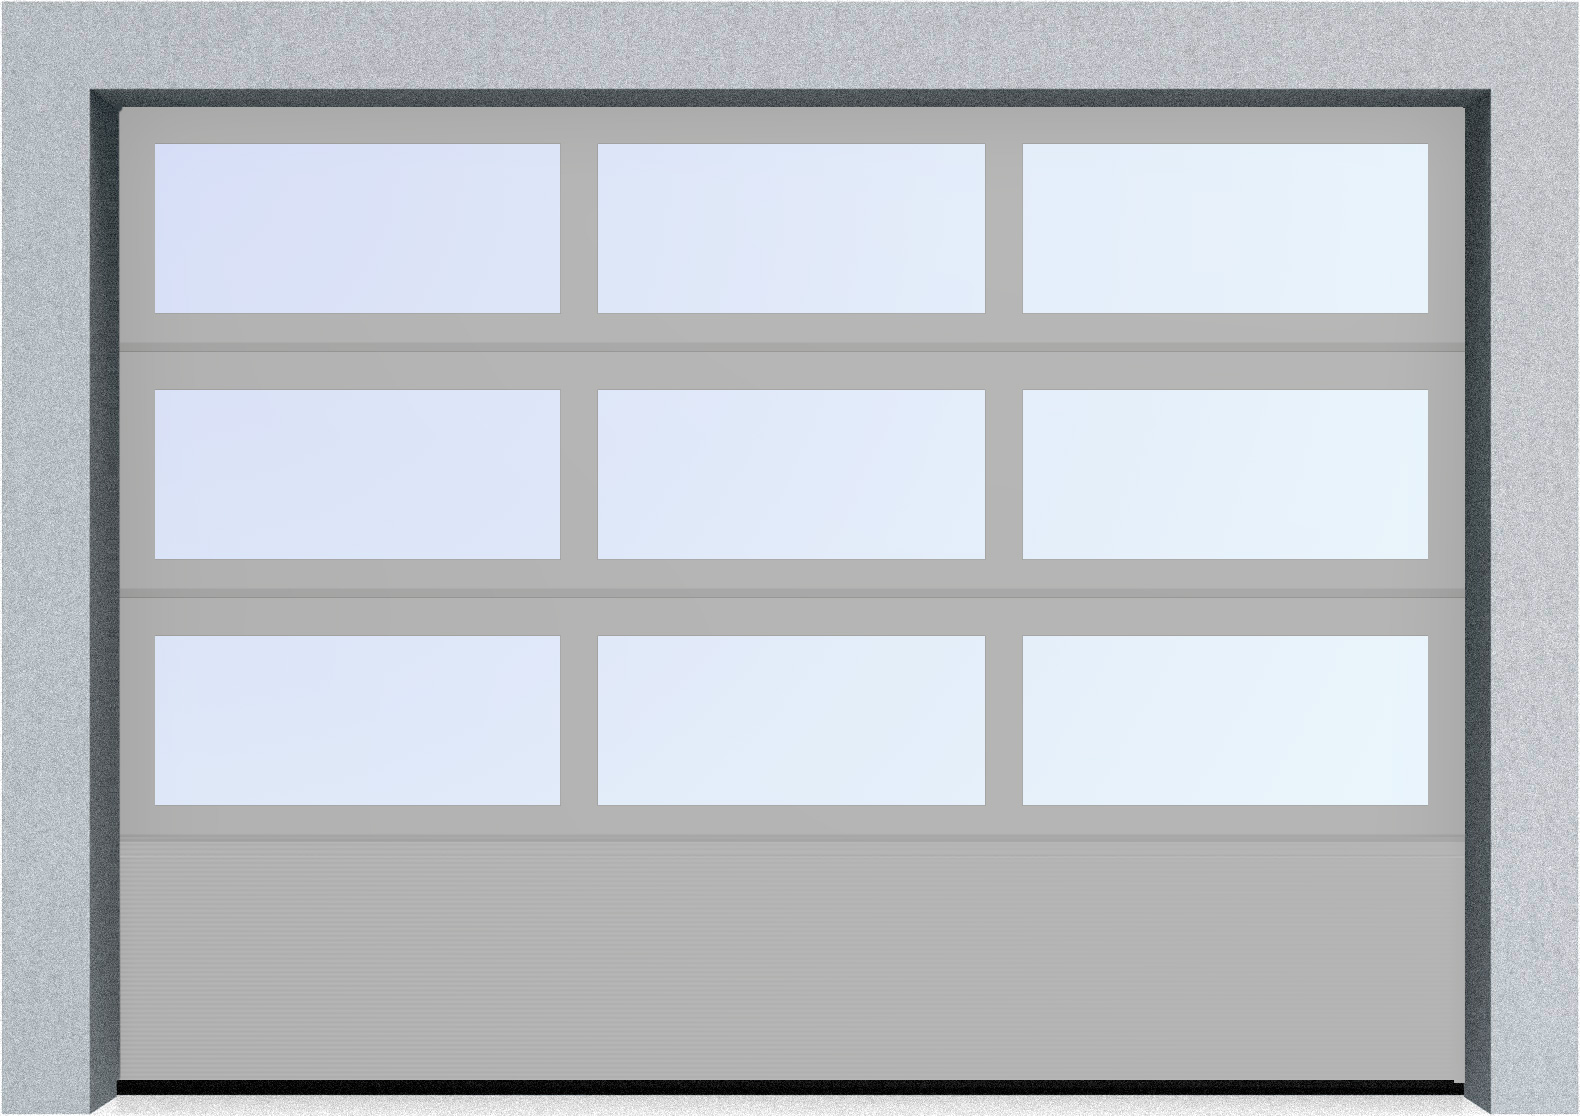  Автоматические секционные панорамные ворота серии AluTrend с комбинированным типом полотна (АЛПС) 6500х4500 S-гофр, Микроволна стандартные цвета, фото 17 